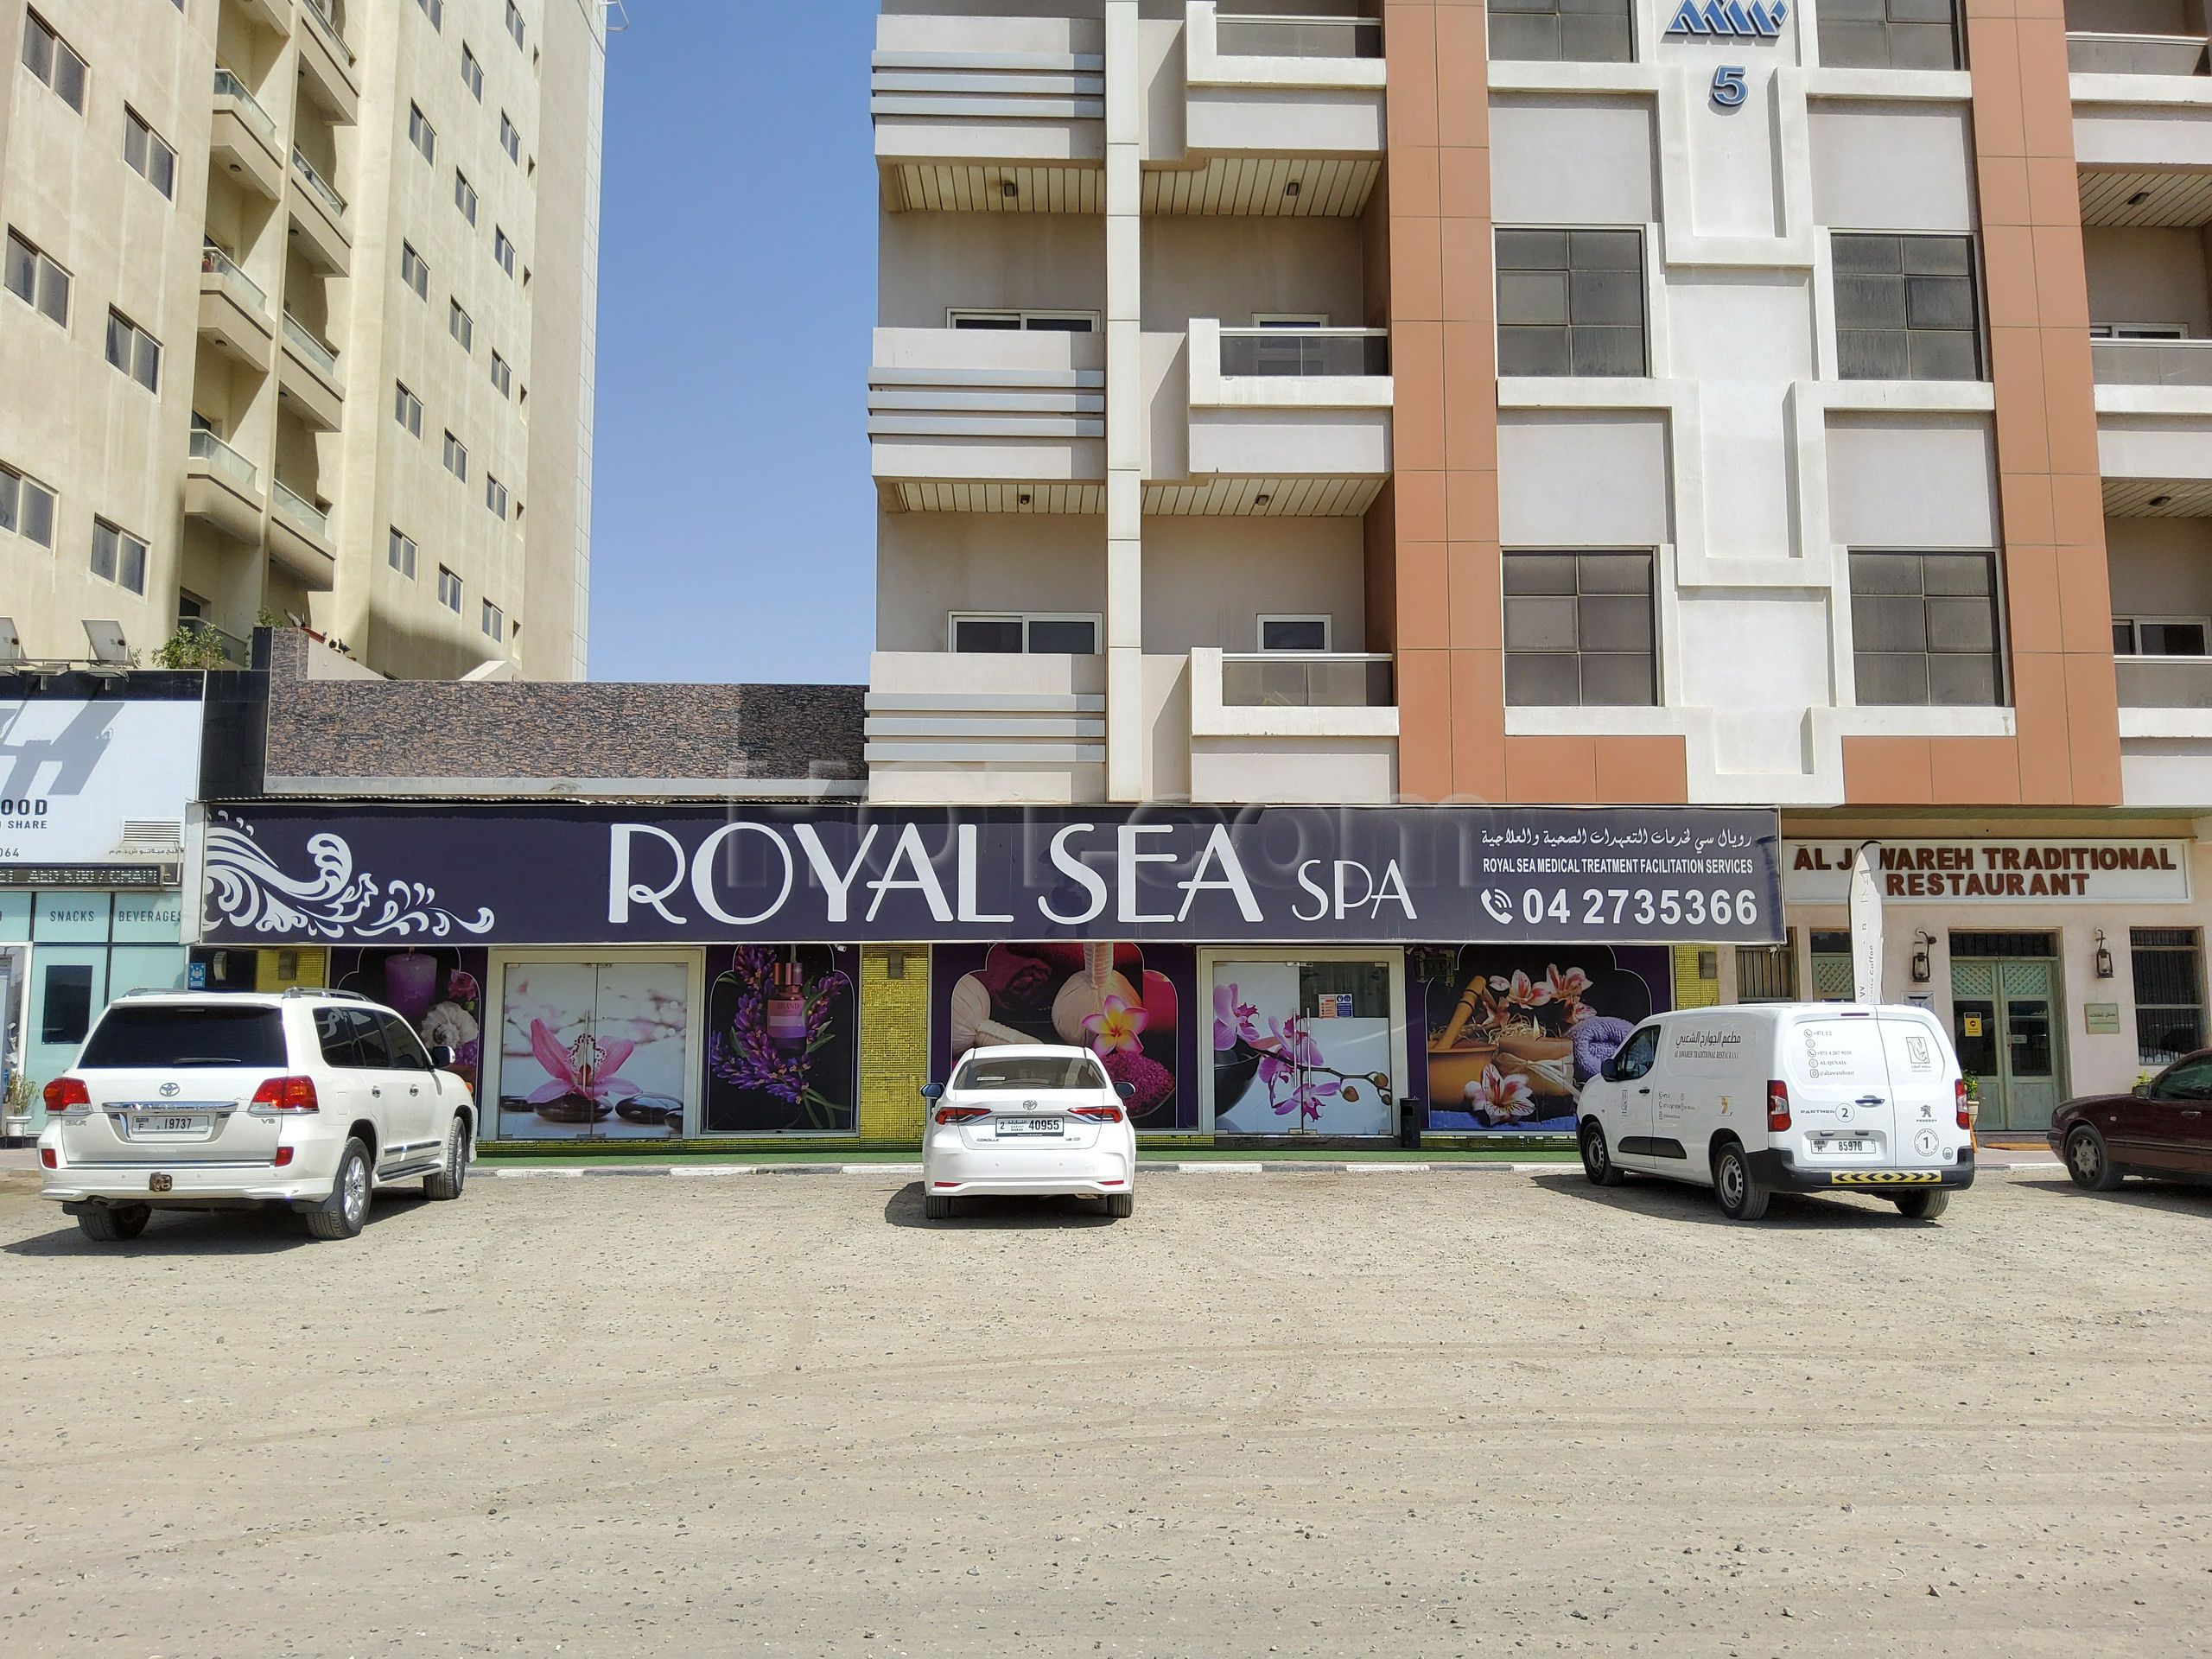 Dubai, United Arab Emirates Royal Sea Spa